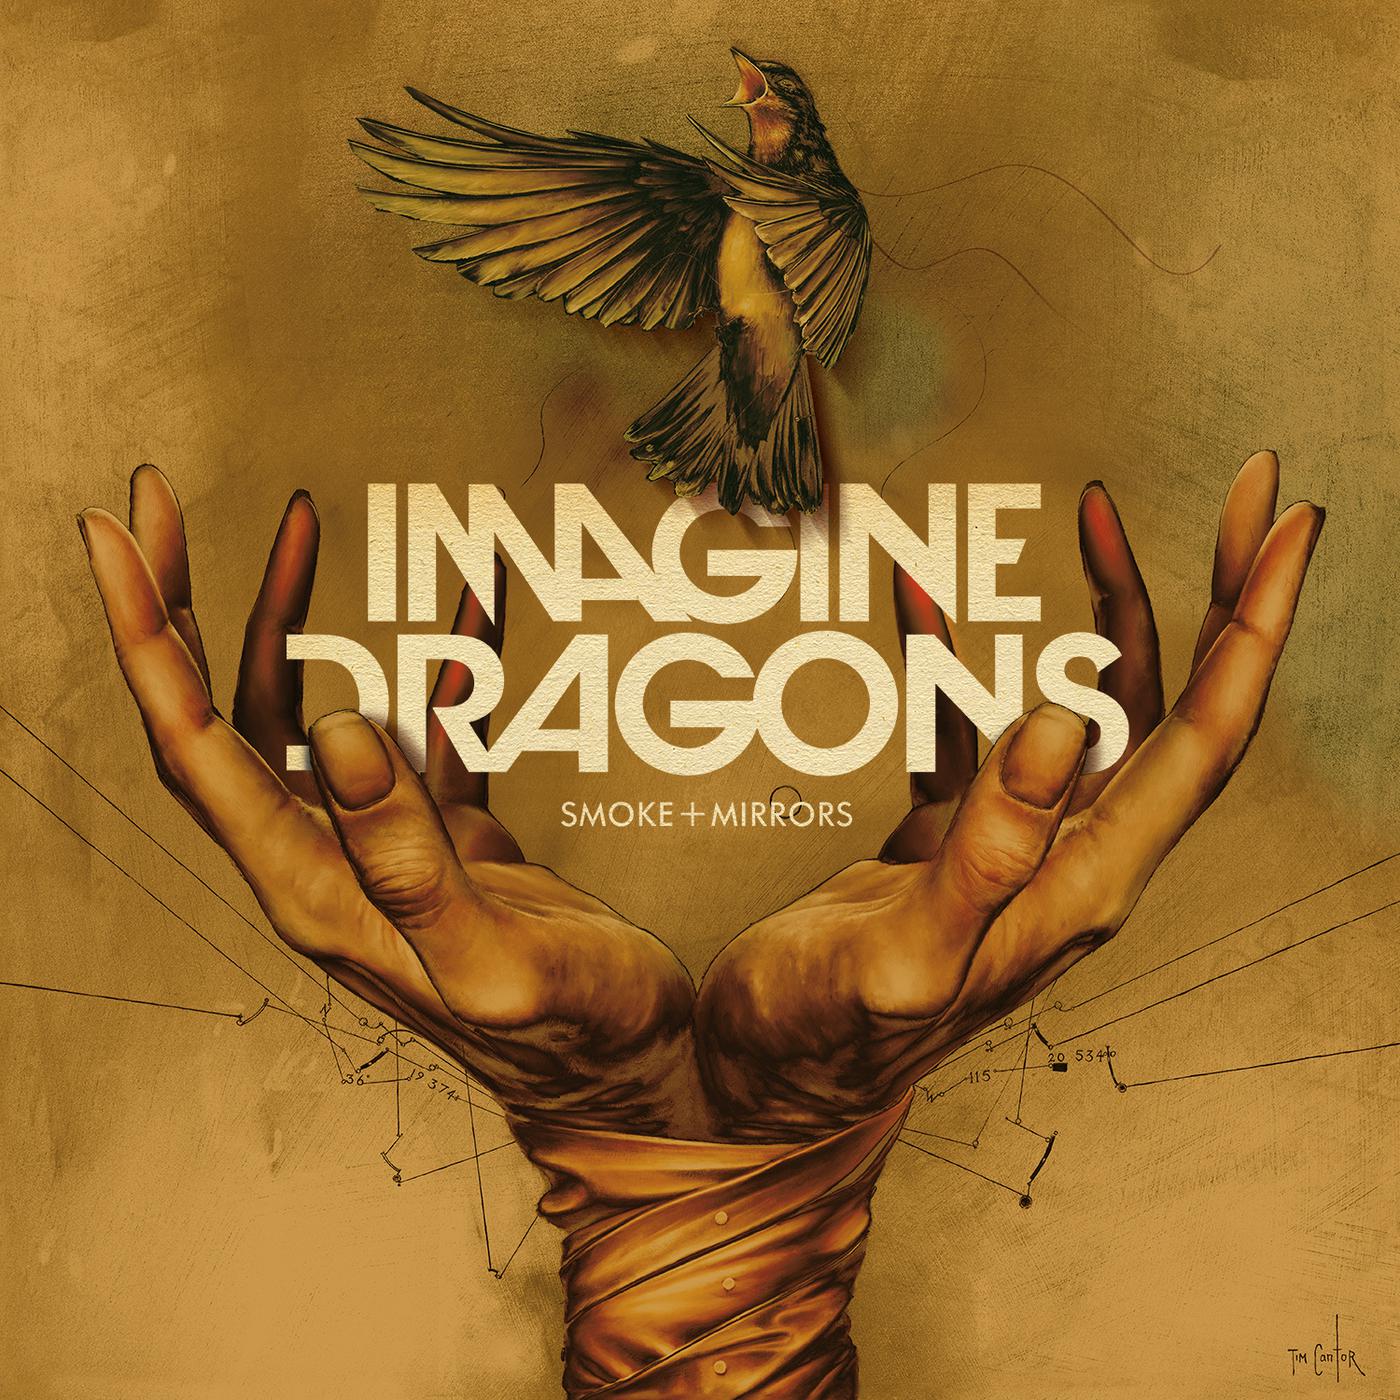 Gold imagine. Imagine Dragons обложки. Imagine Dragons Smoke and Mirrors. Imagine Dragons обложки альбомов. Imagine Dragons Smoke and Mirrors альбом.